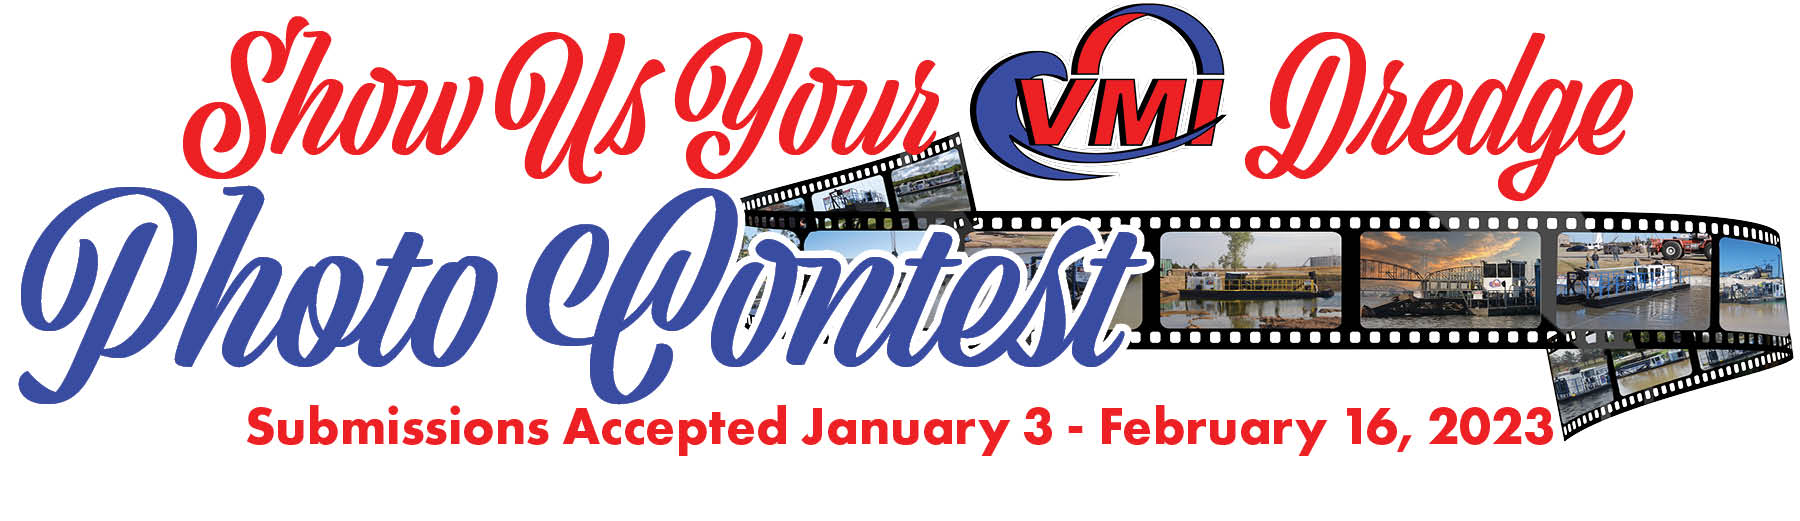 VMI Photo Contest